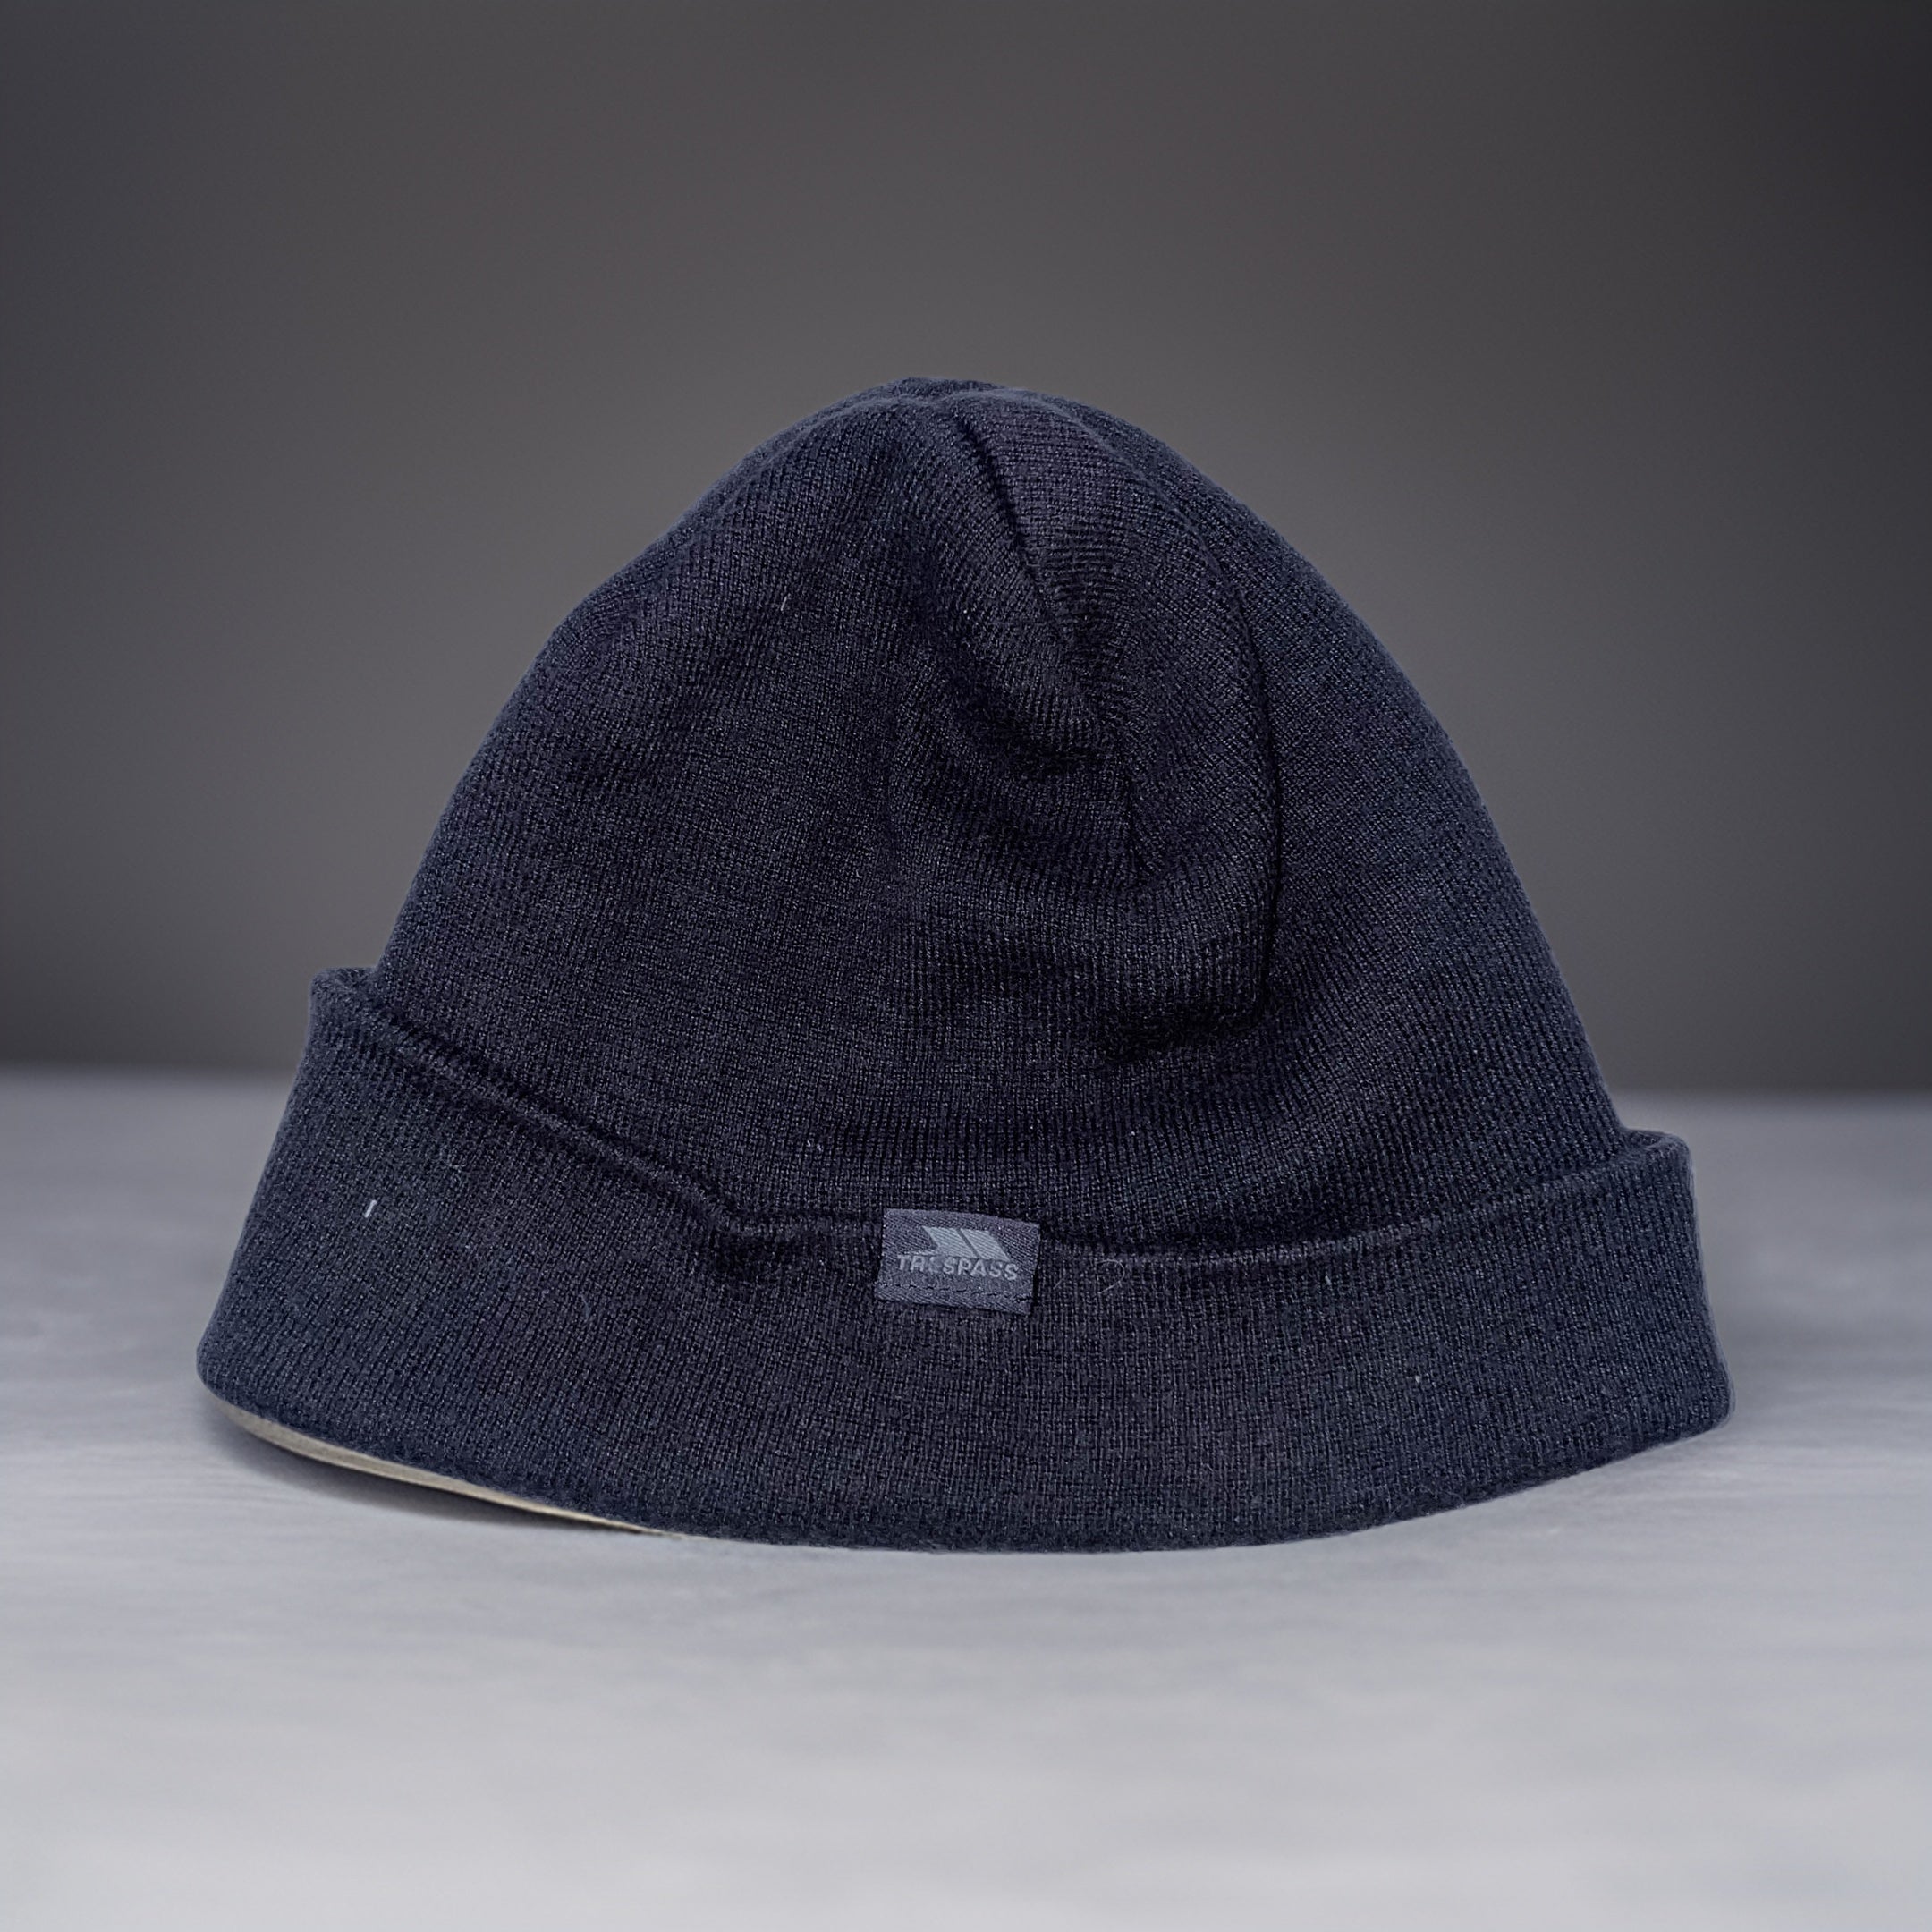 Vintage Trespass grey beanie hat